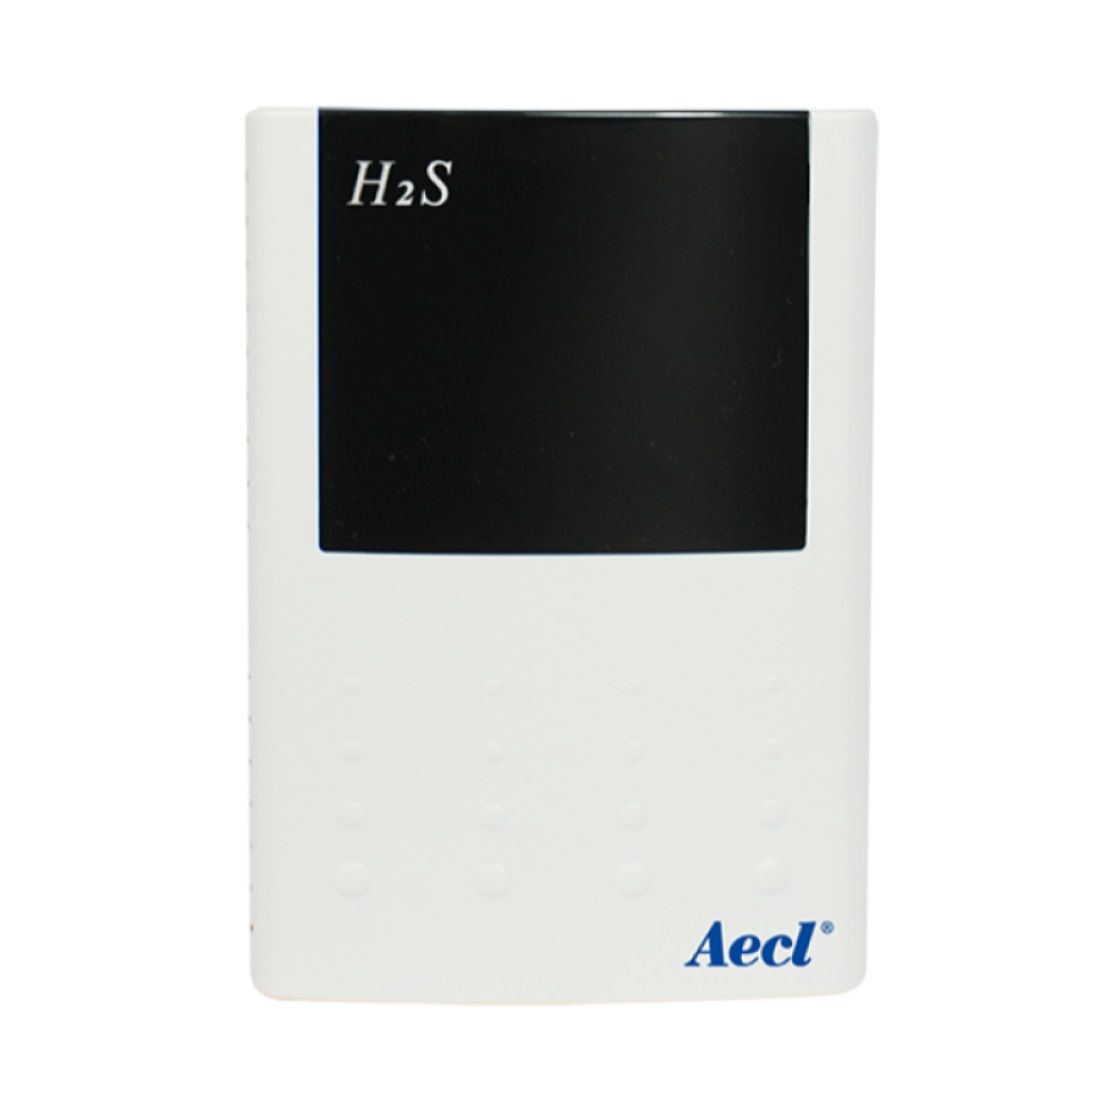 Solution de détection sans fil pour la surveillance environnementale du H2S.